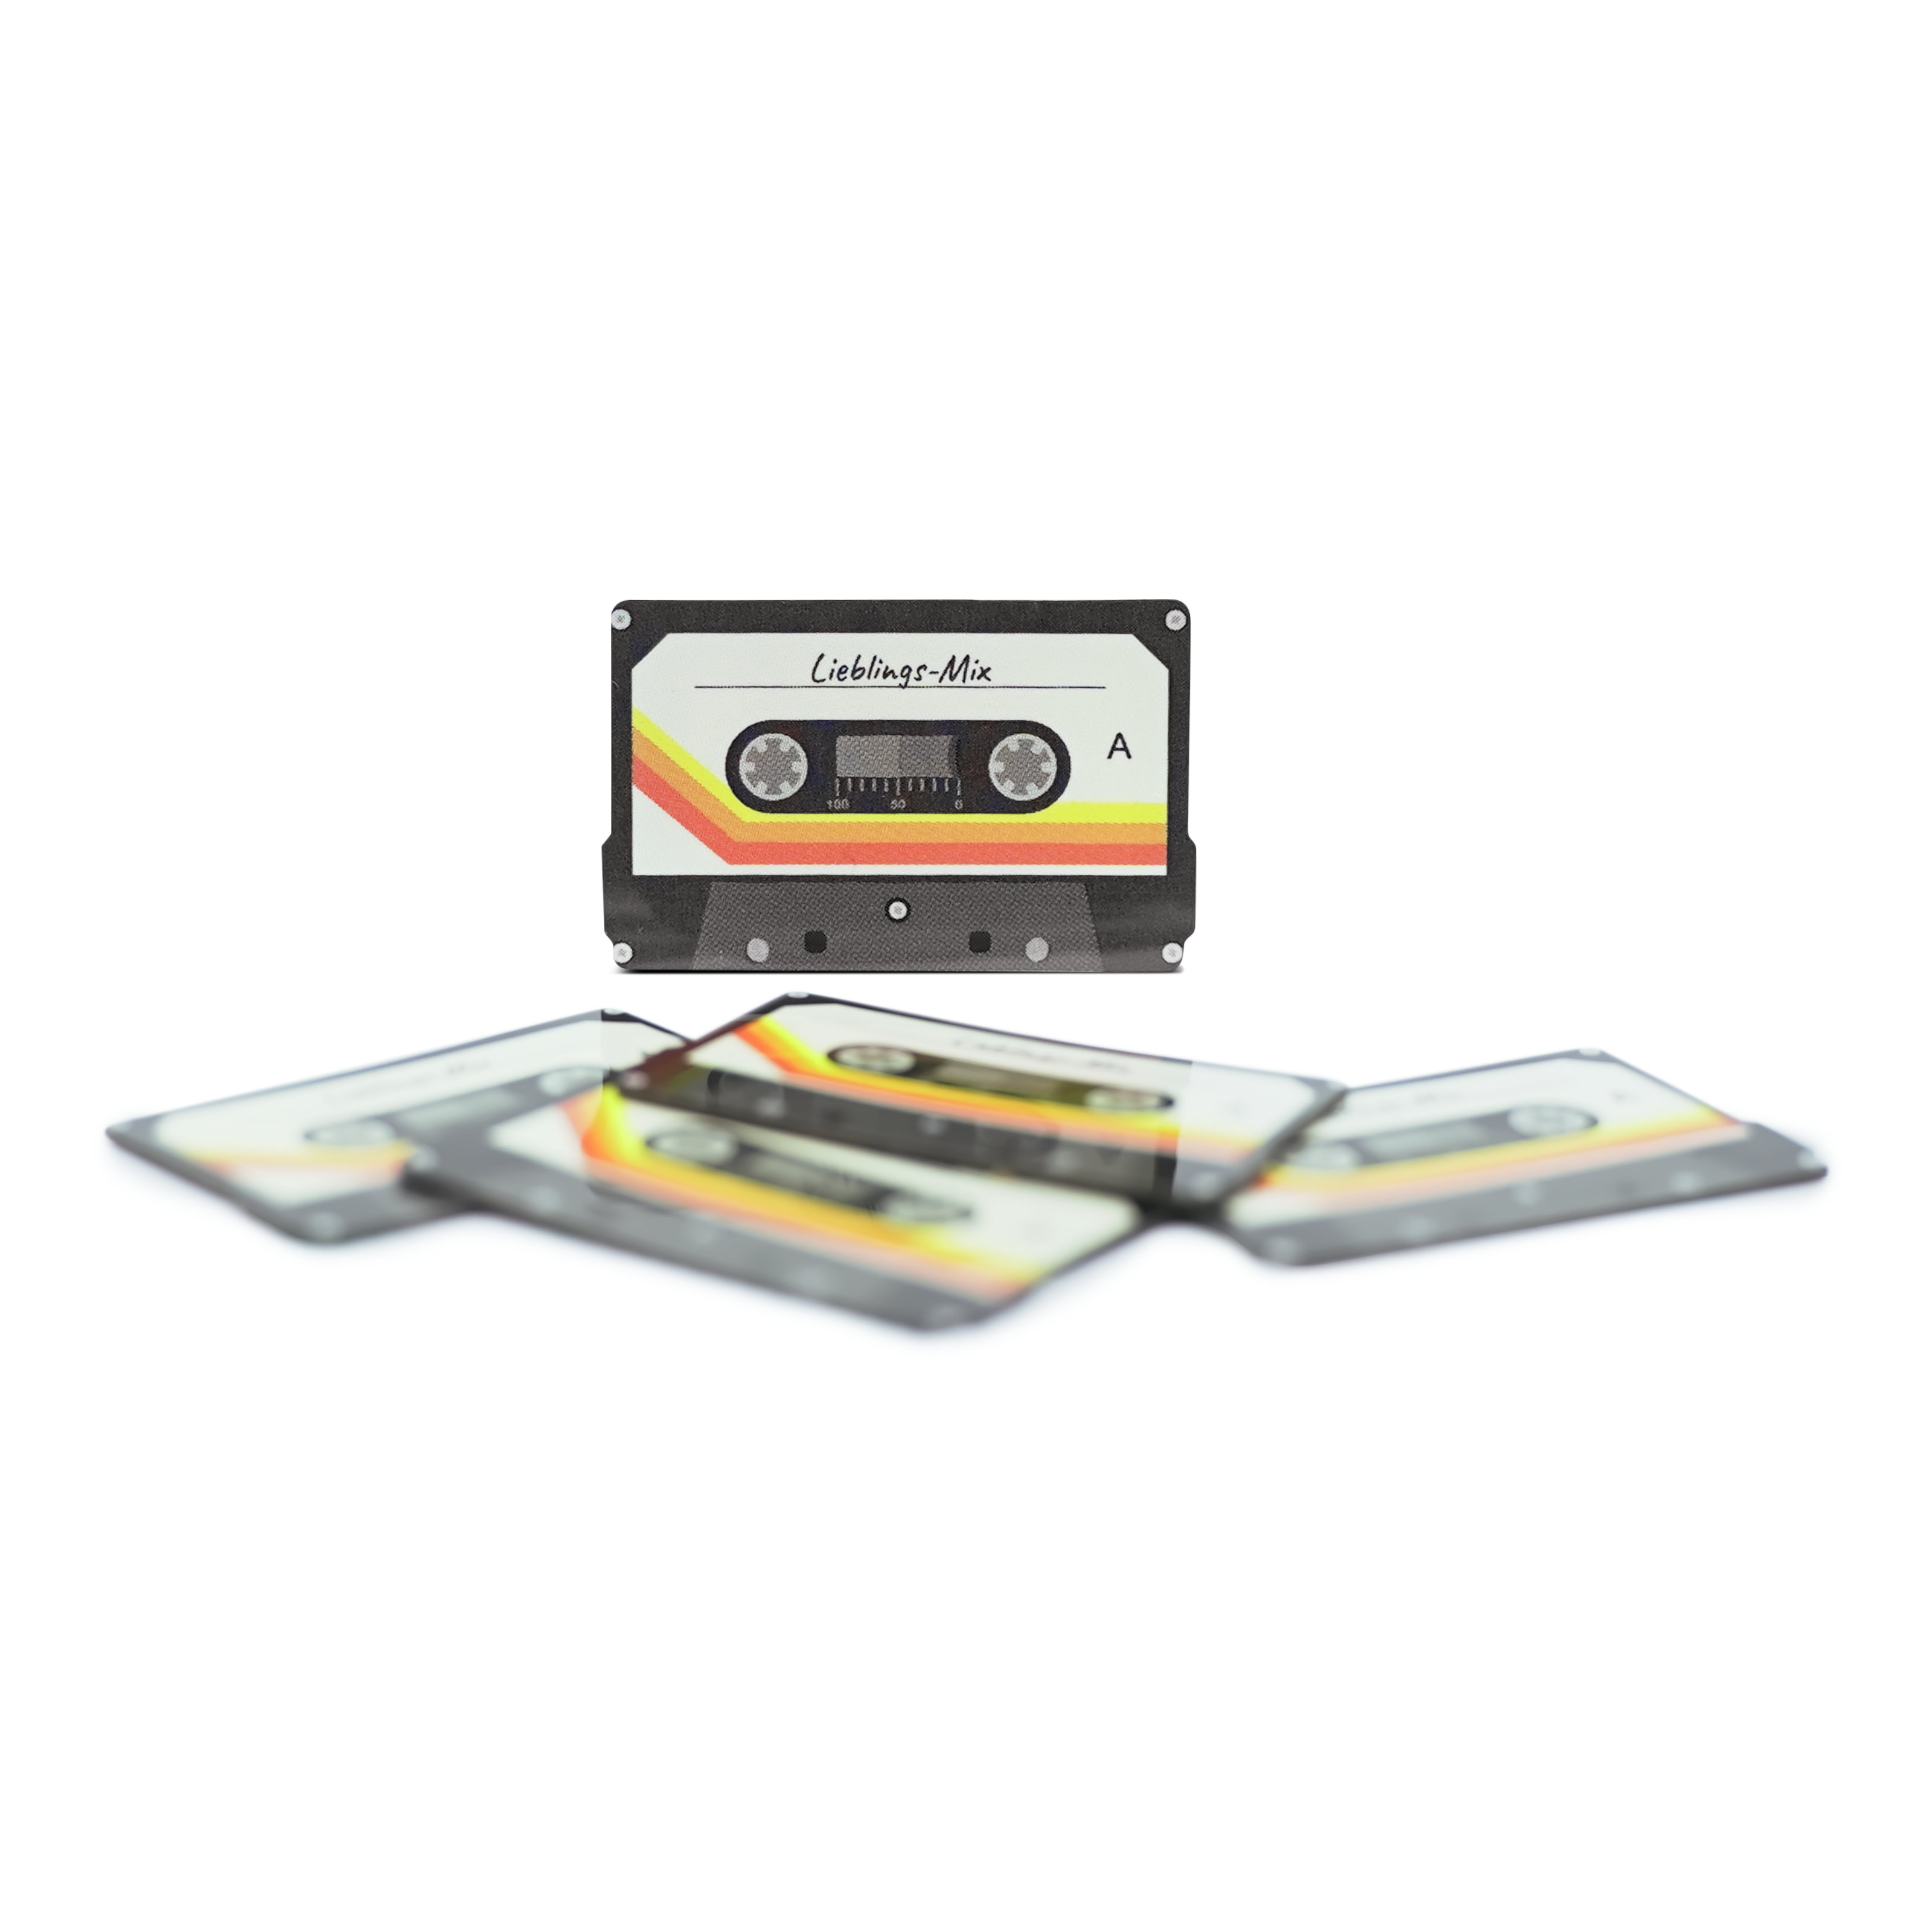 NFC Vibes Kassette - Digitaler Musik-Sticker - PET - 35 x 22 mm - schwarz / weiß / orange - deutsches Label